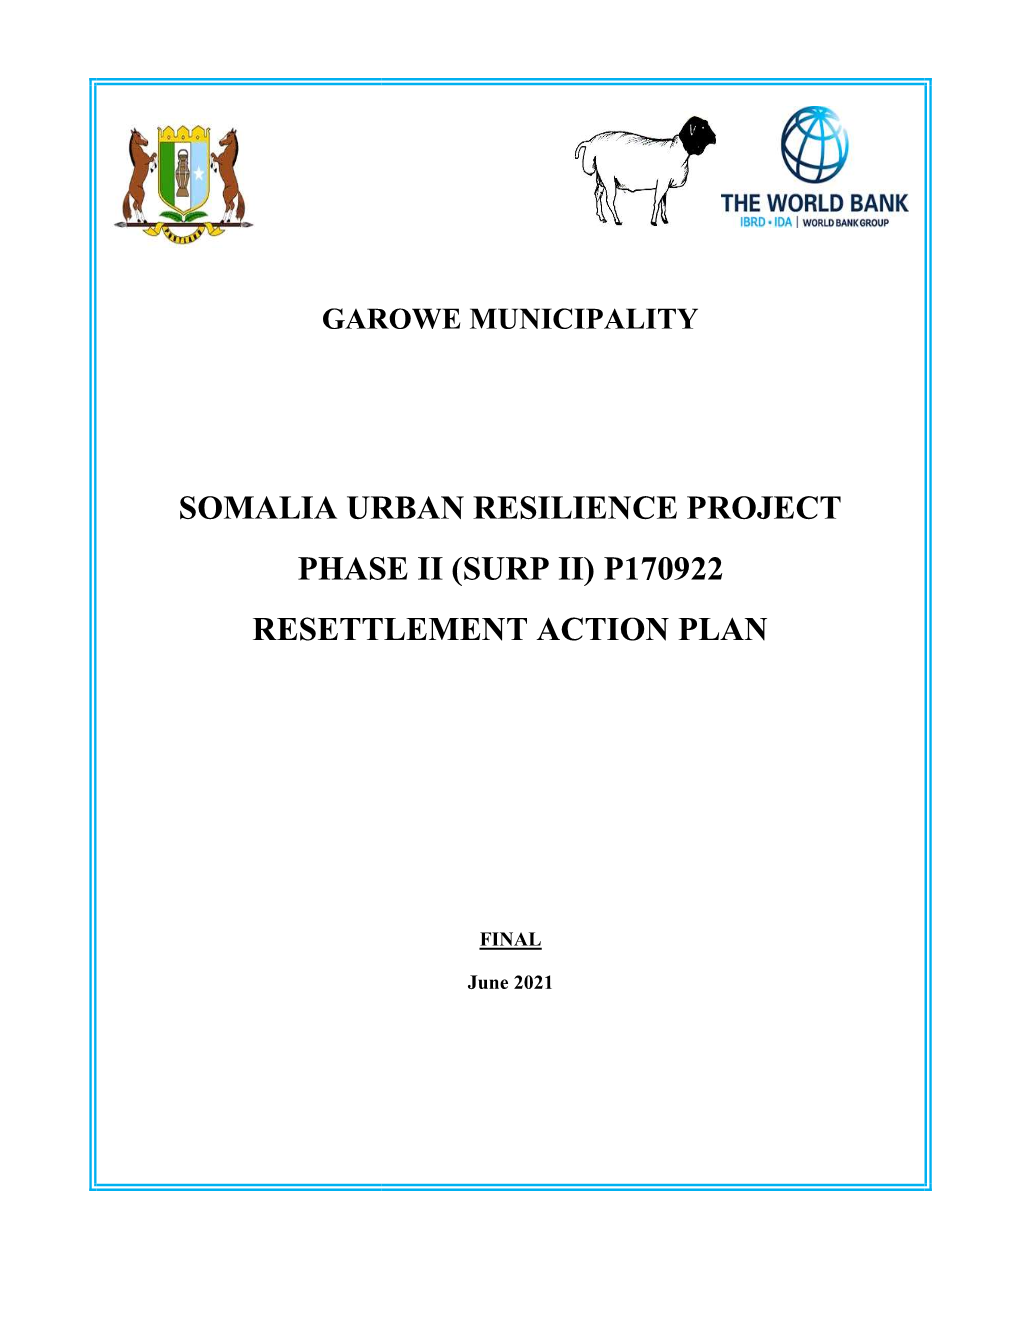 Somalia Urban Resil Phase Ii (Surp